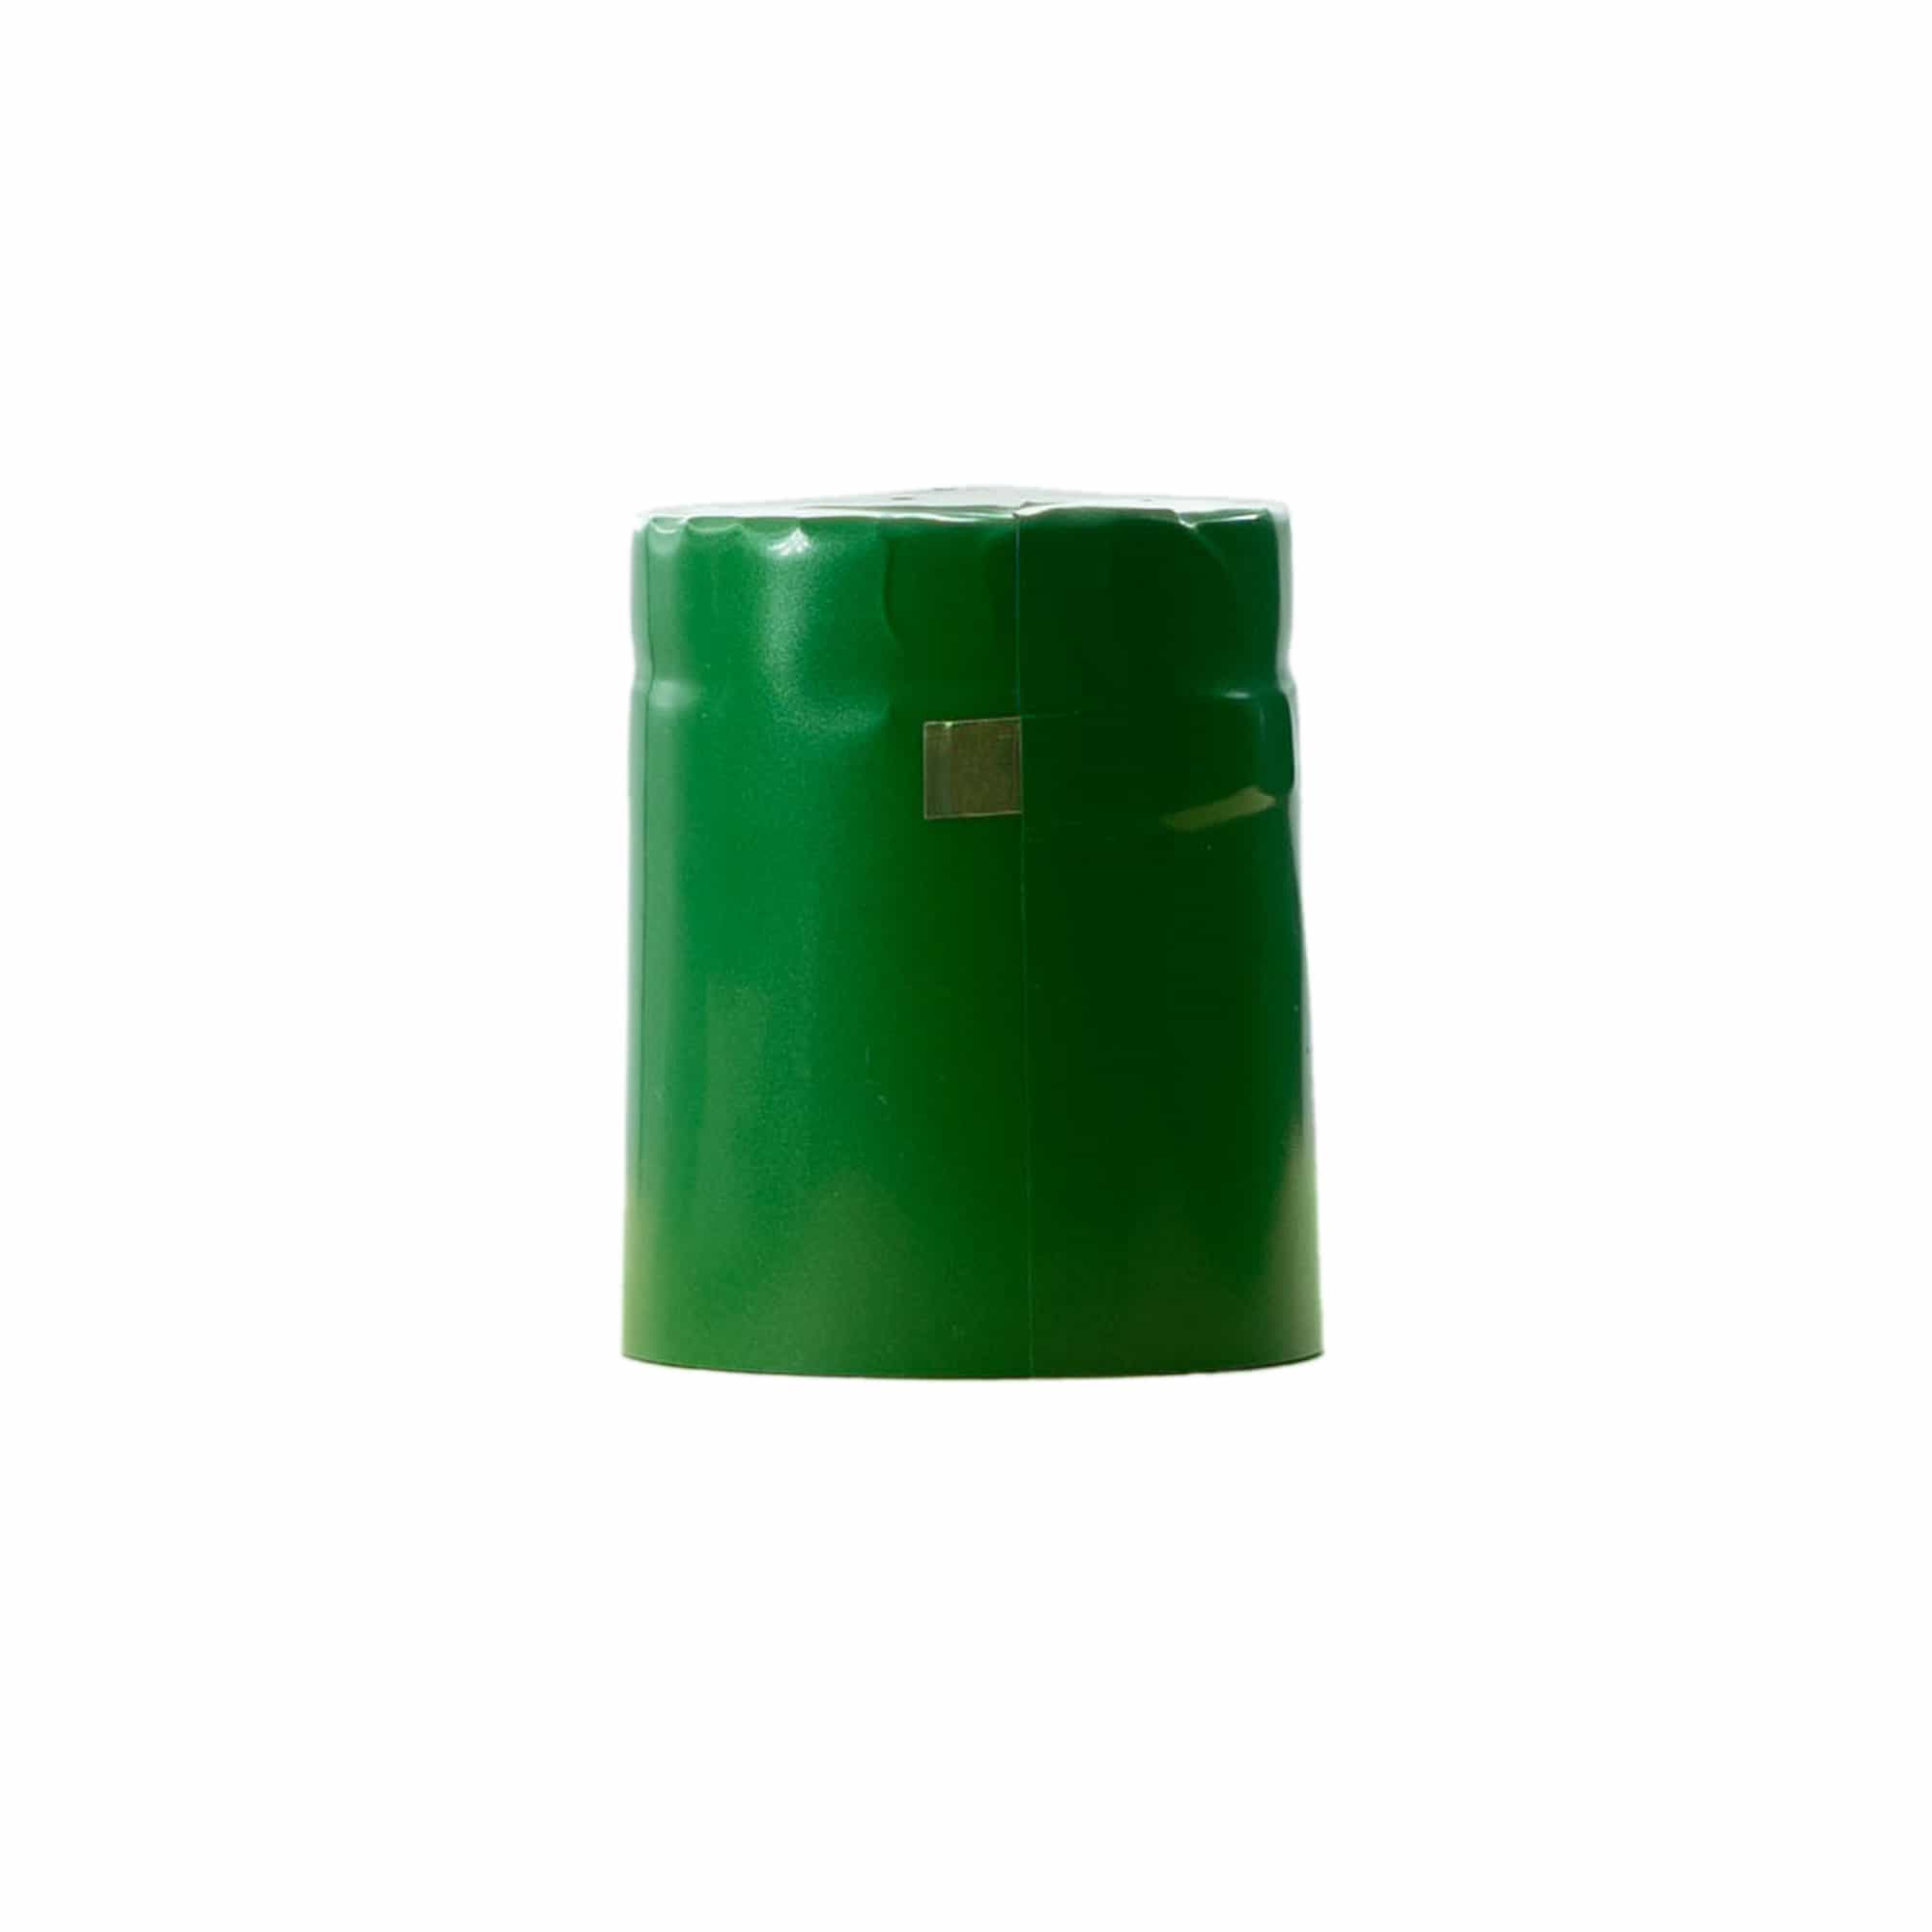 Capsula termoretraibile 32x41, plastica PVC, verde